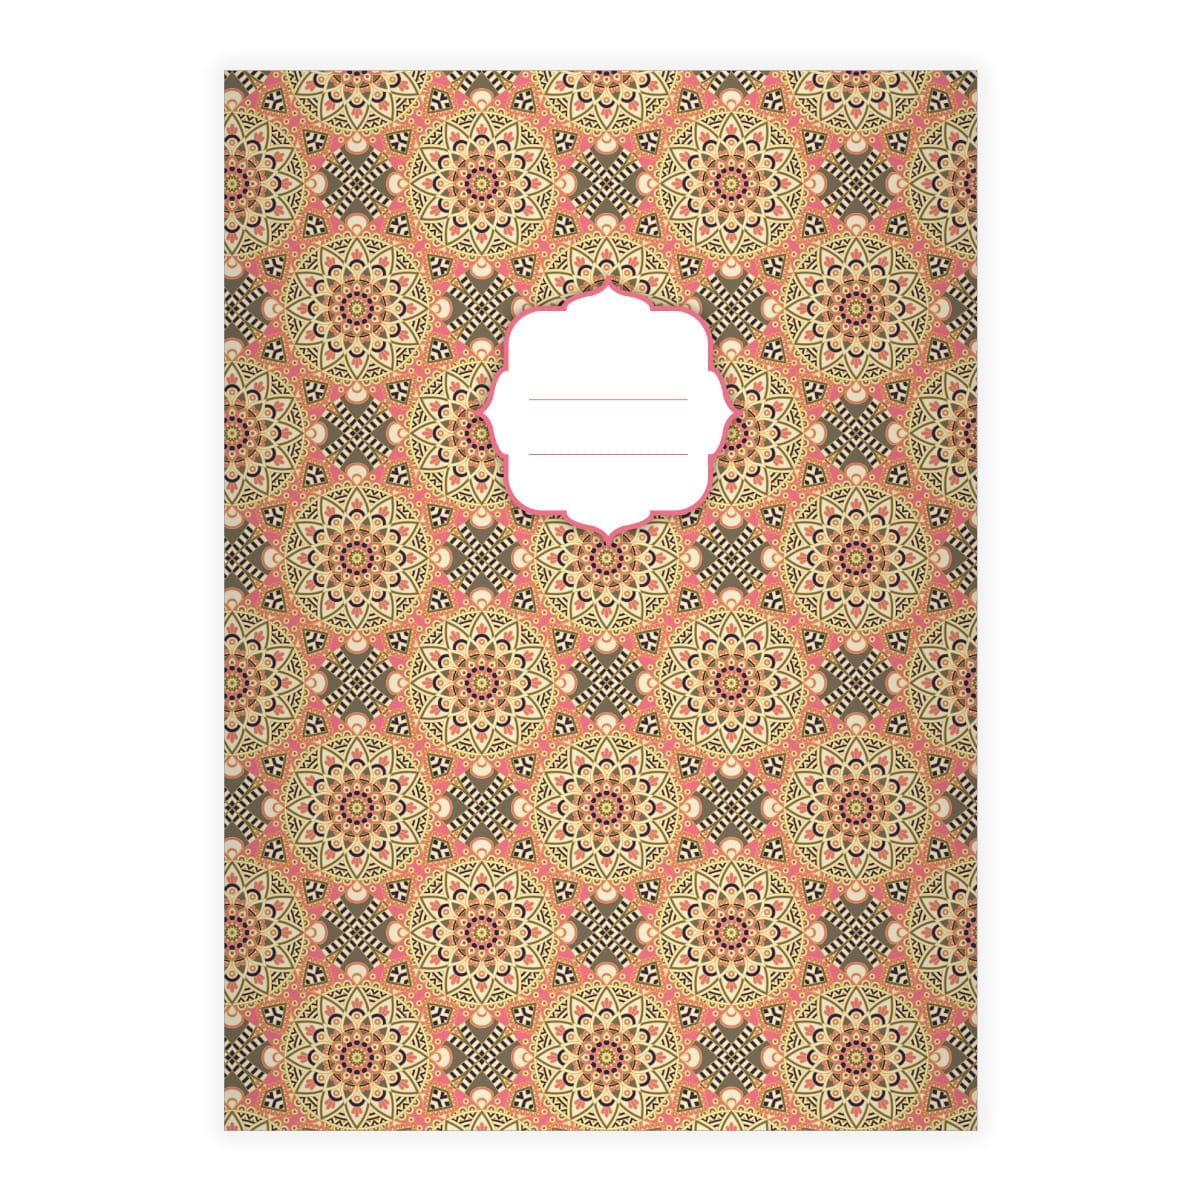 Kartenkaufrausch: Schickes Boho Stil Notizheft/ aus unserer Designer Papeterie in rosa